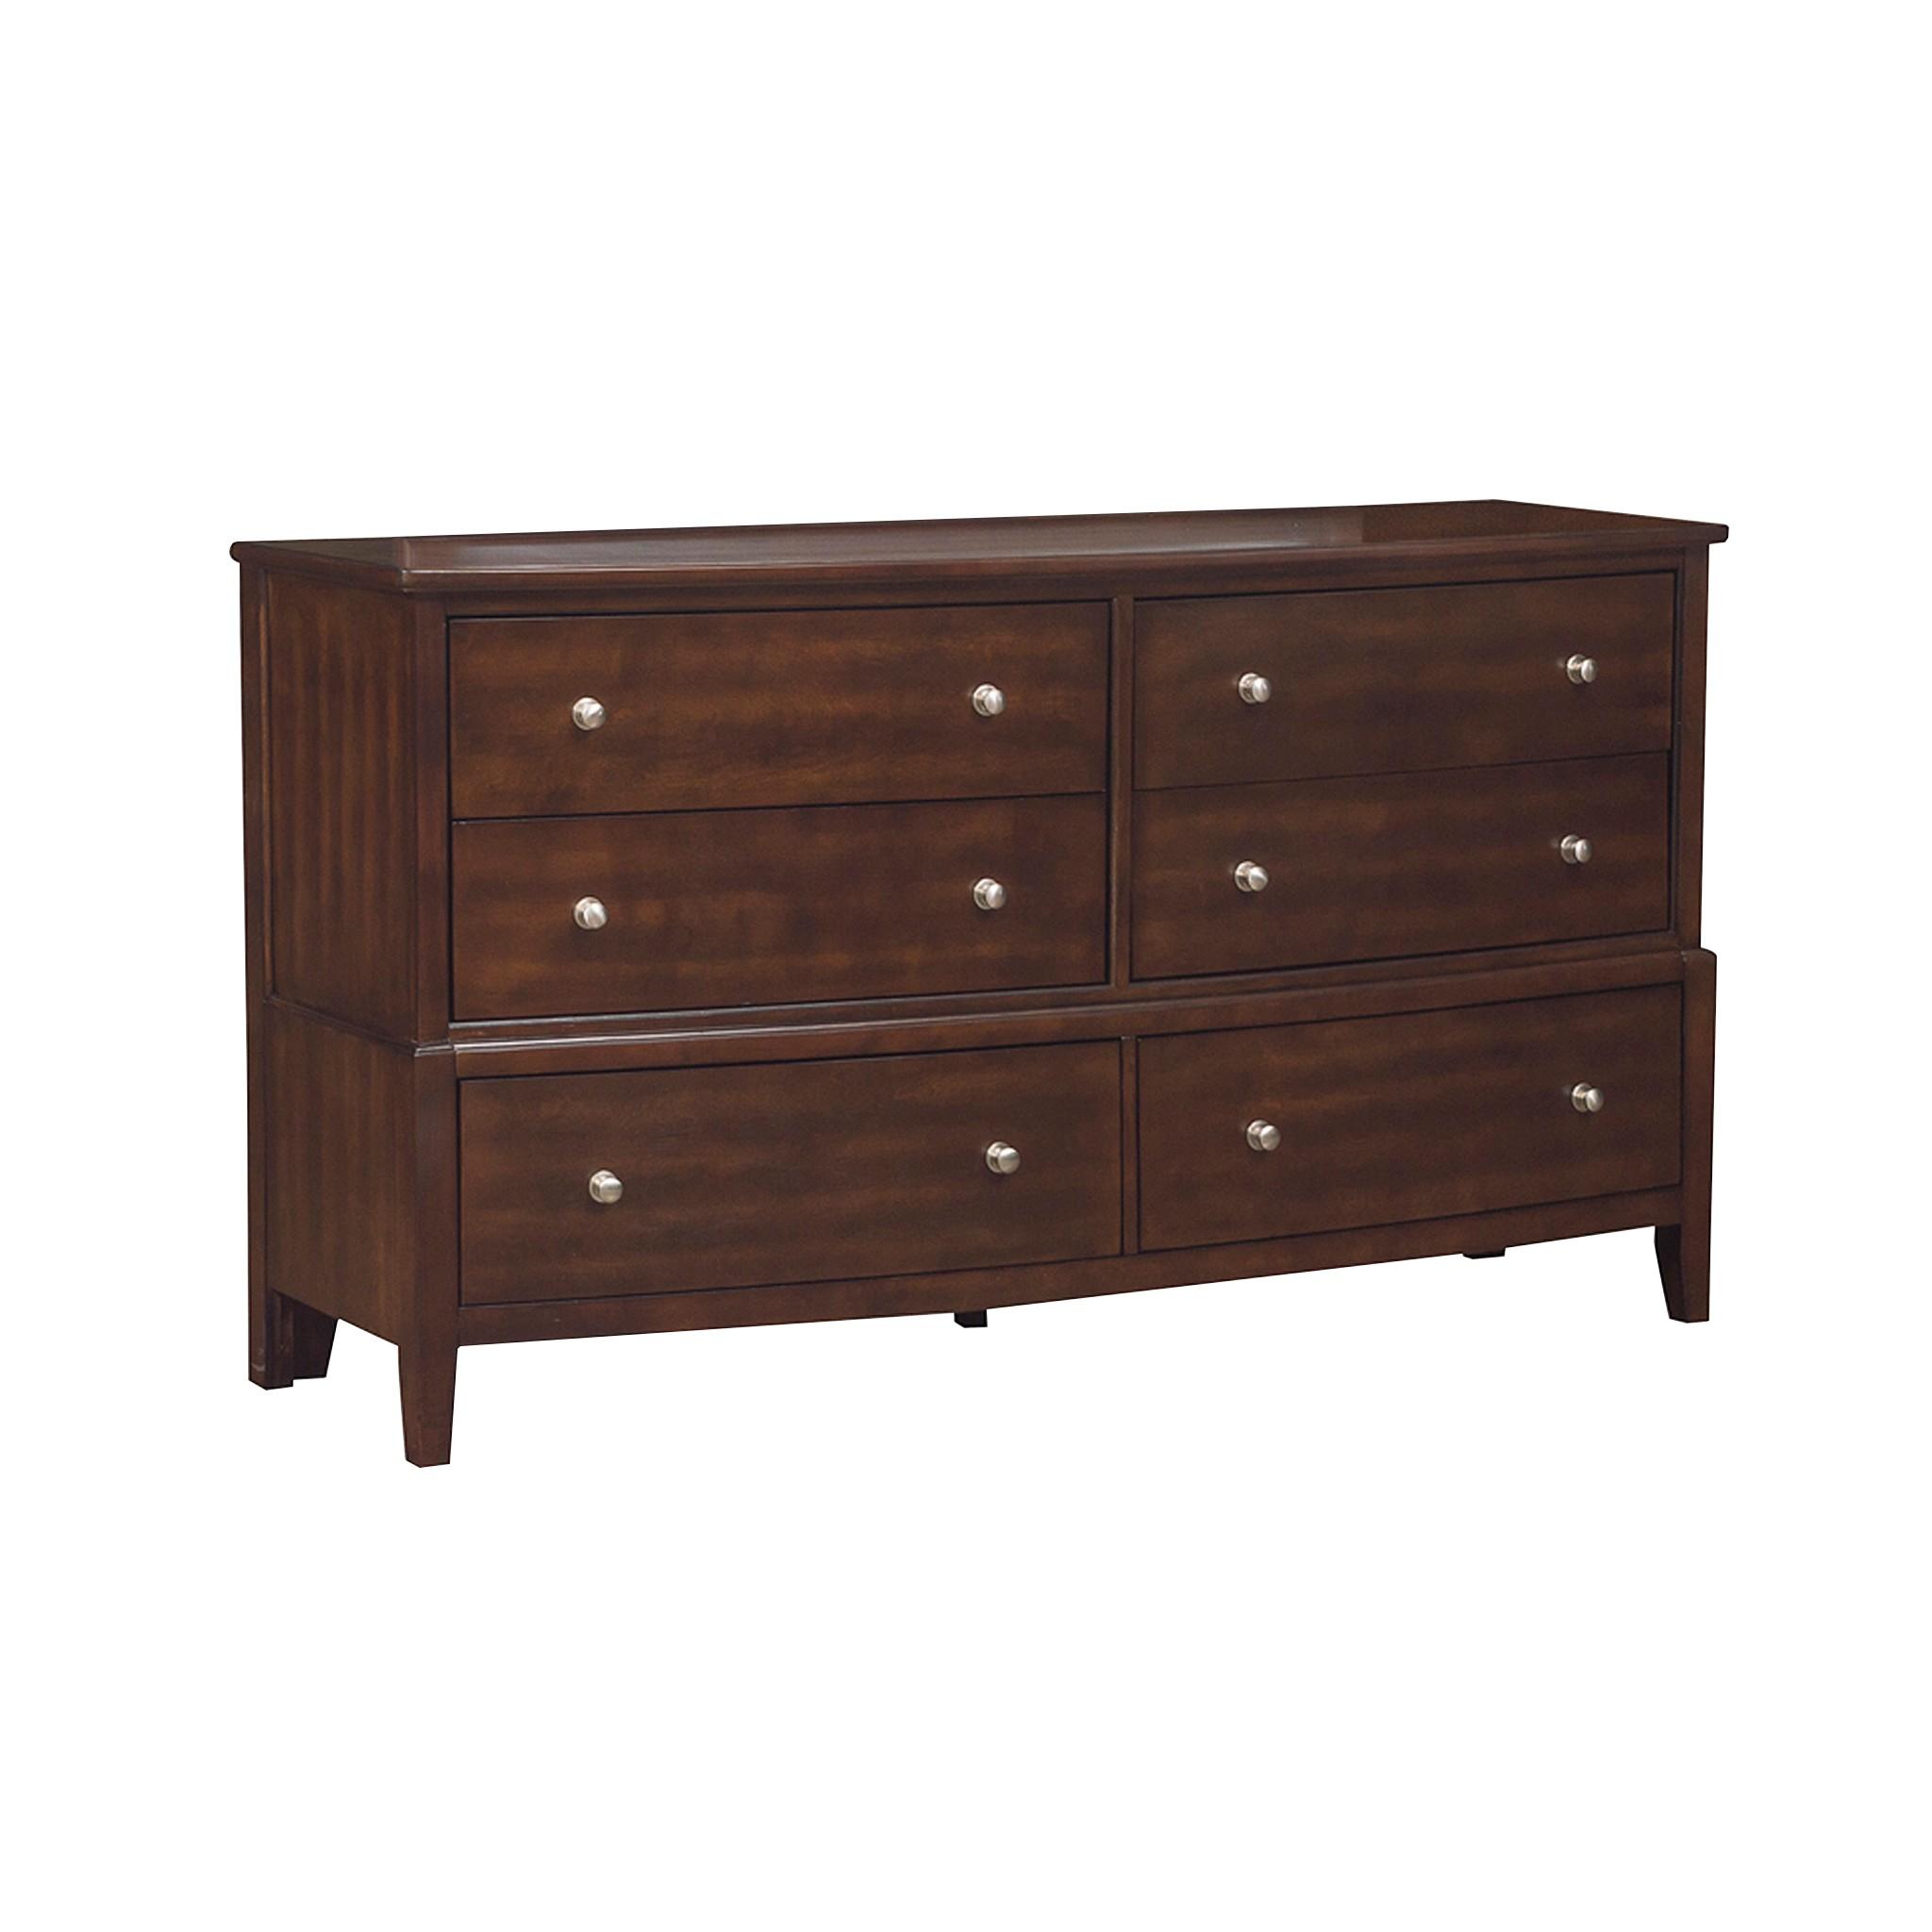 Homelegance 1730-5 Cotterill Dresser